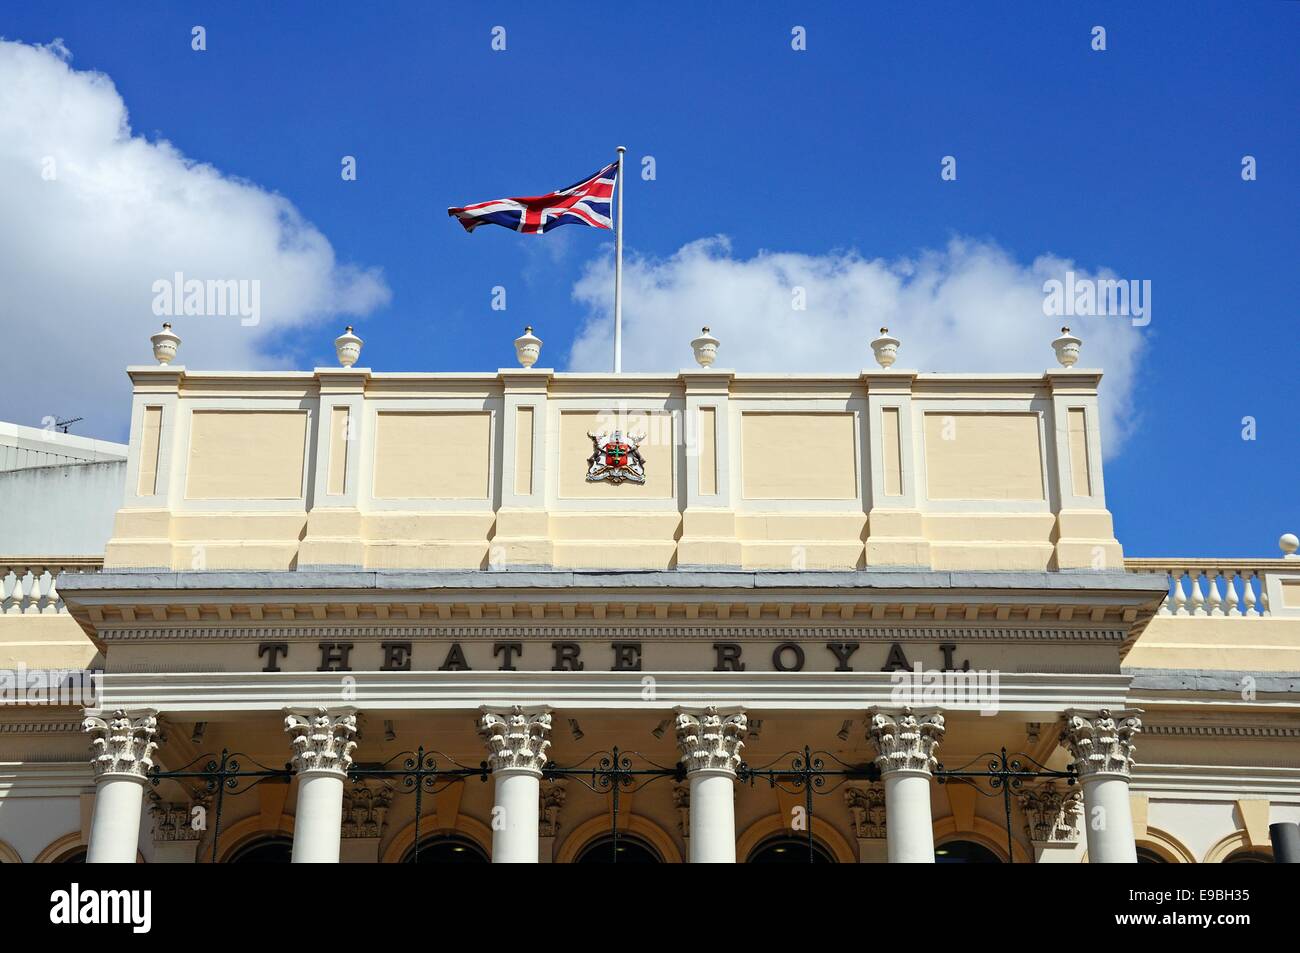 Nombre distintivo y un escudo en la fachada del Teatro Real, la Plaza del Teatro, Upper Parliament Street, Nottingham, Inglaterra, Reino Unido. Foto de stock